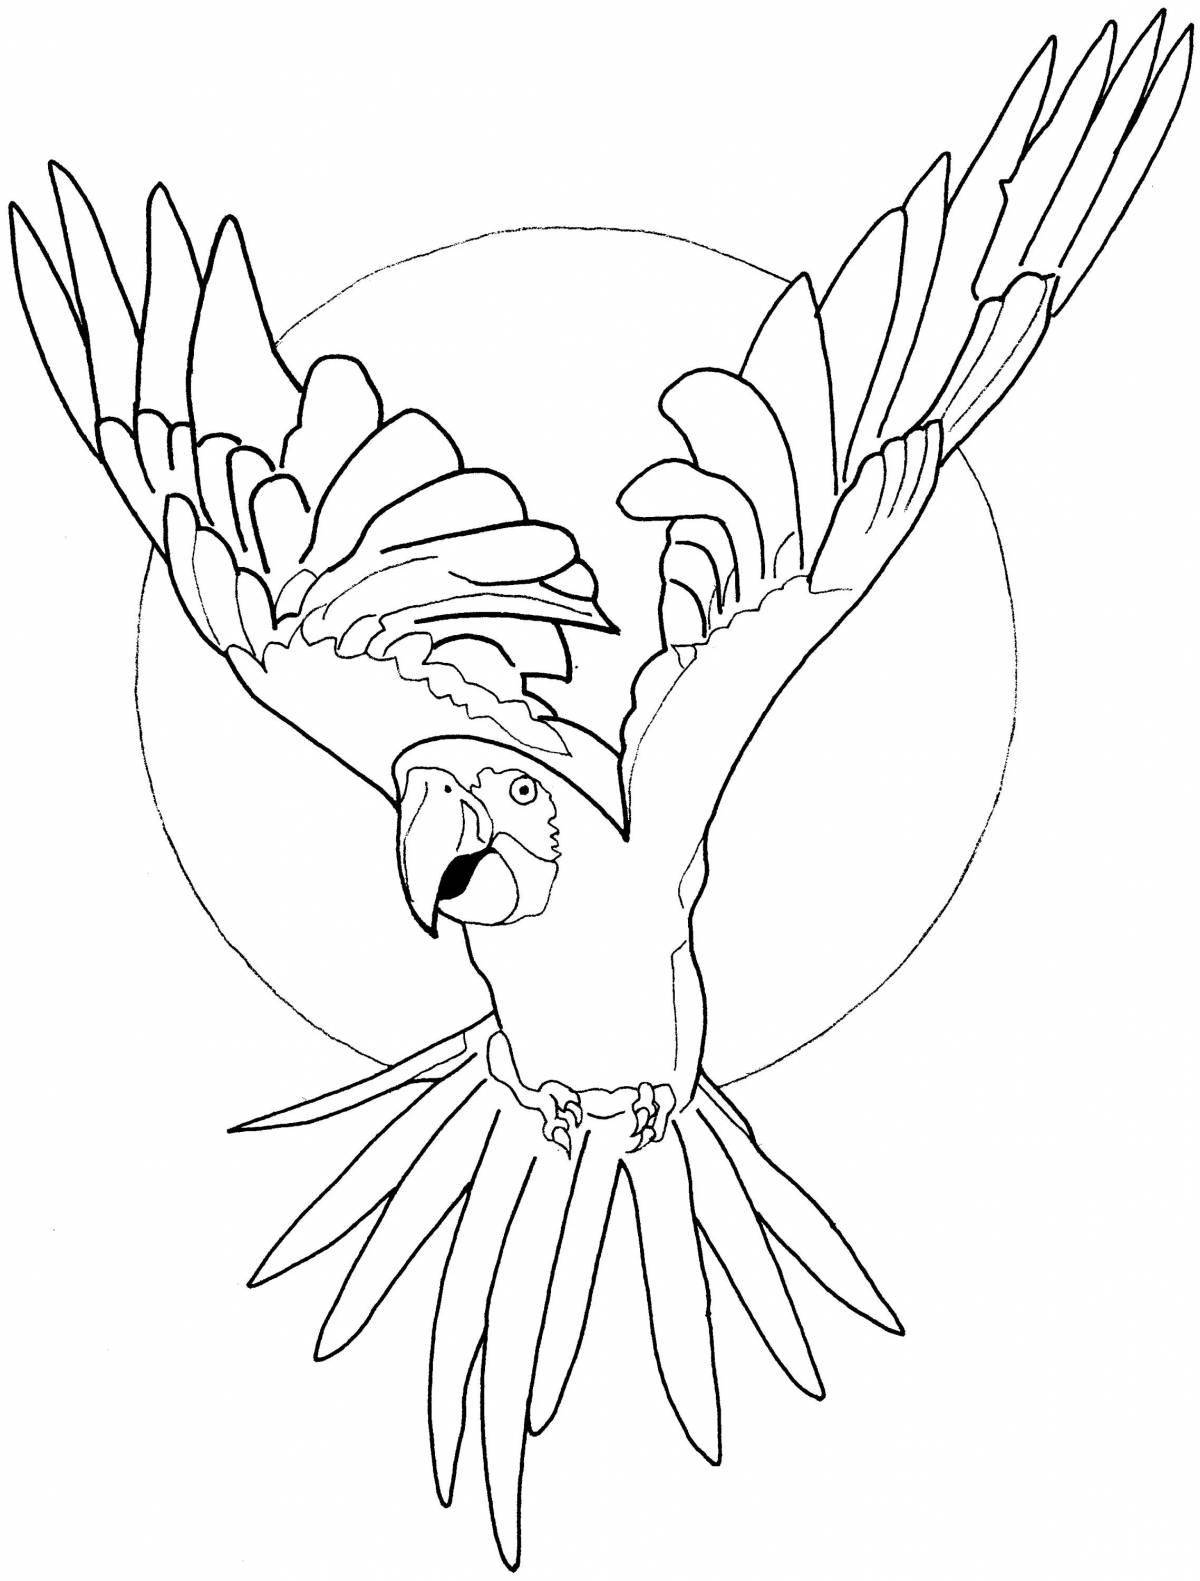 Сказочная раскраска попугай ара для детей